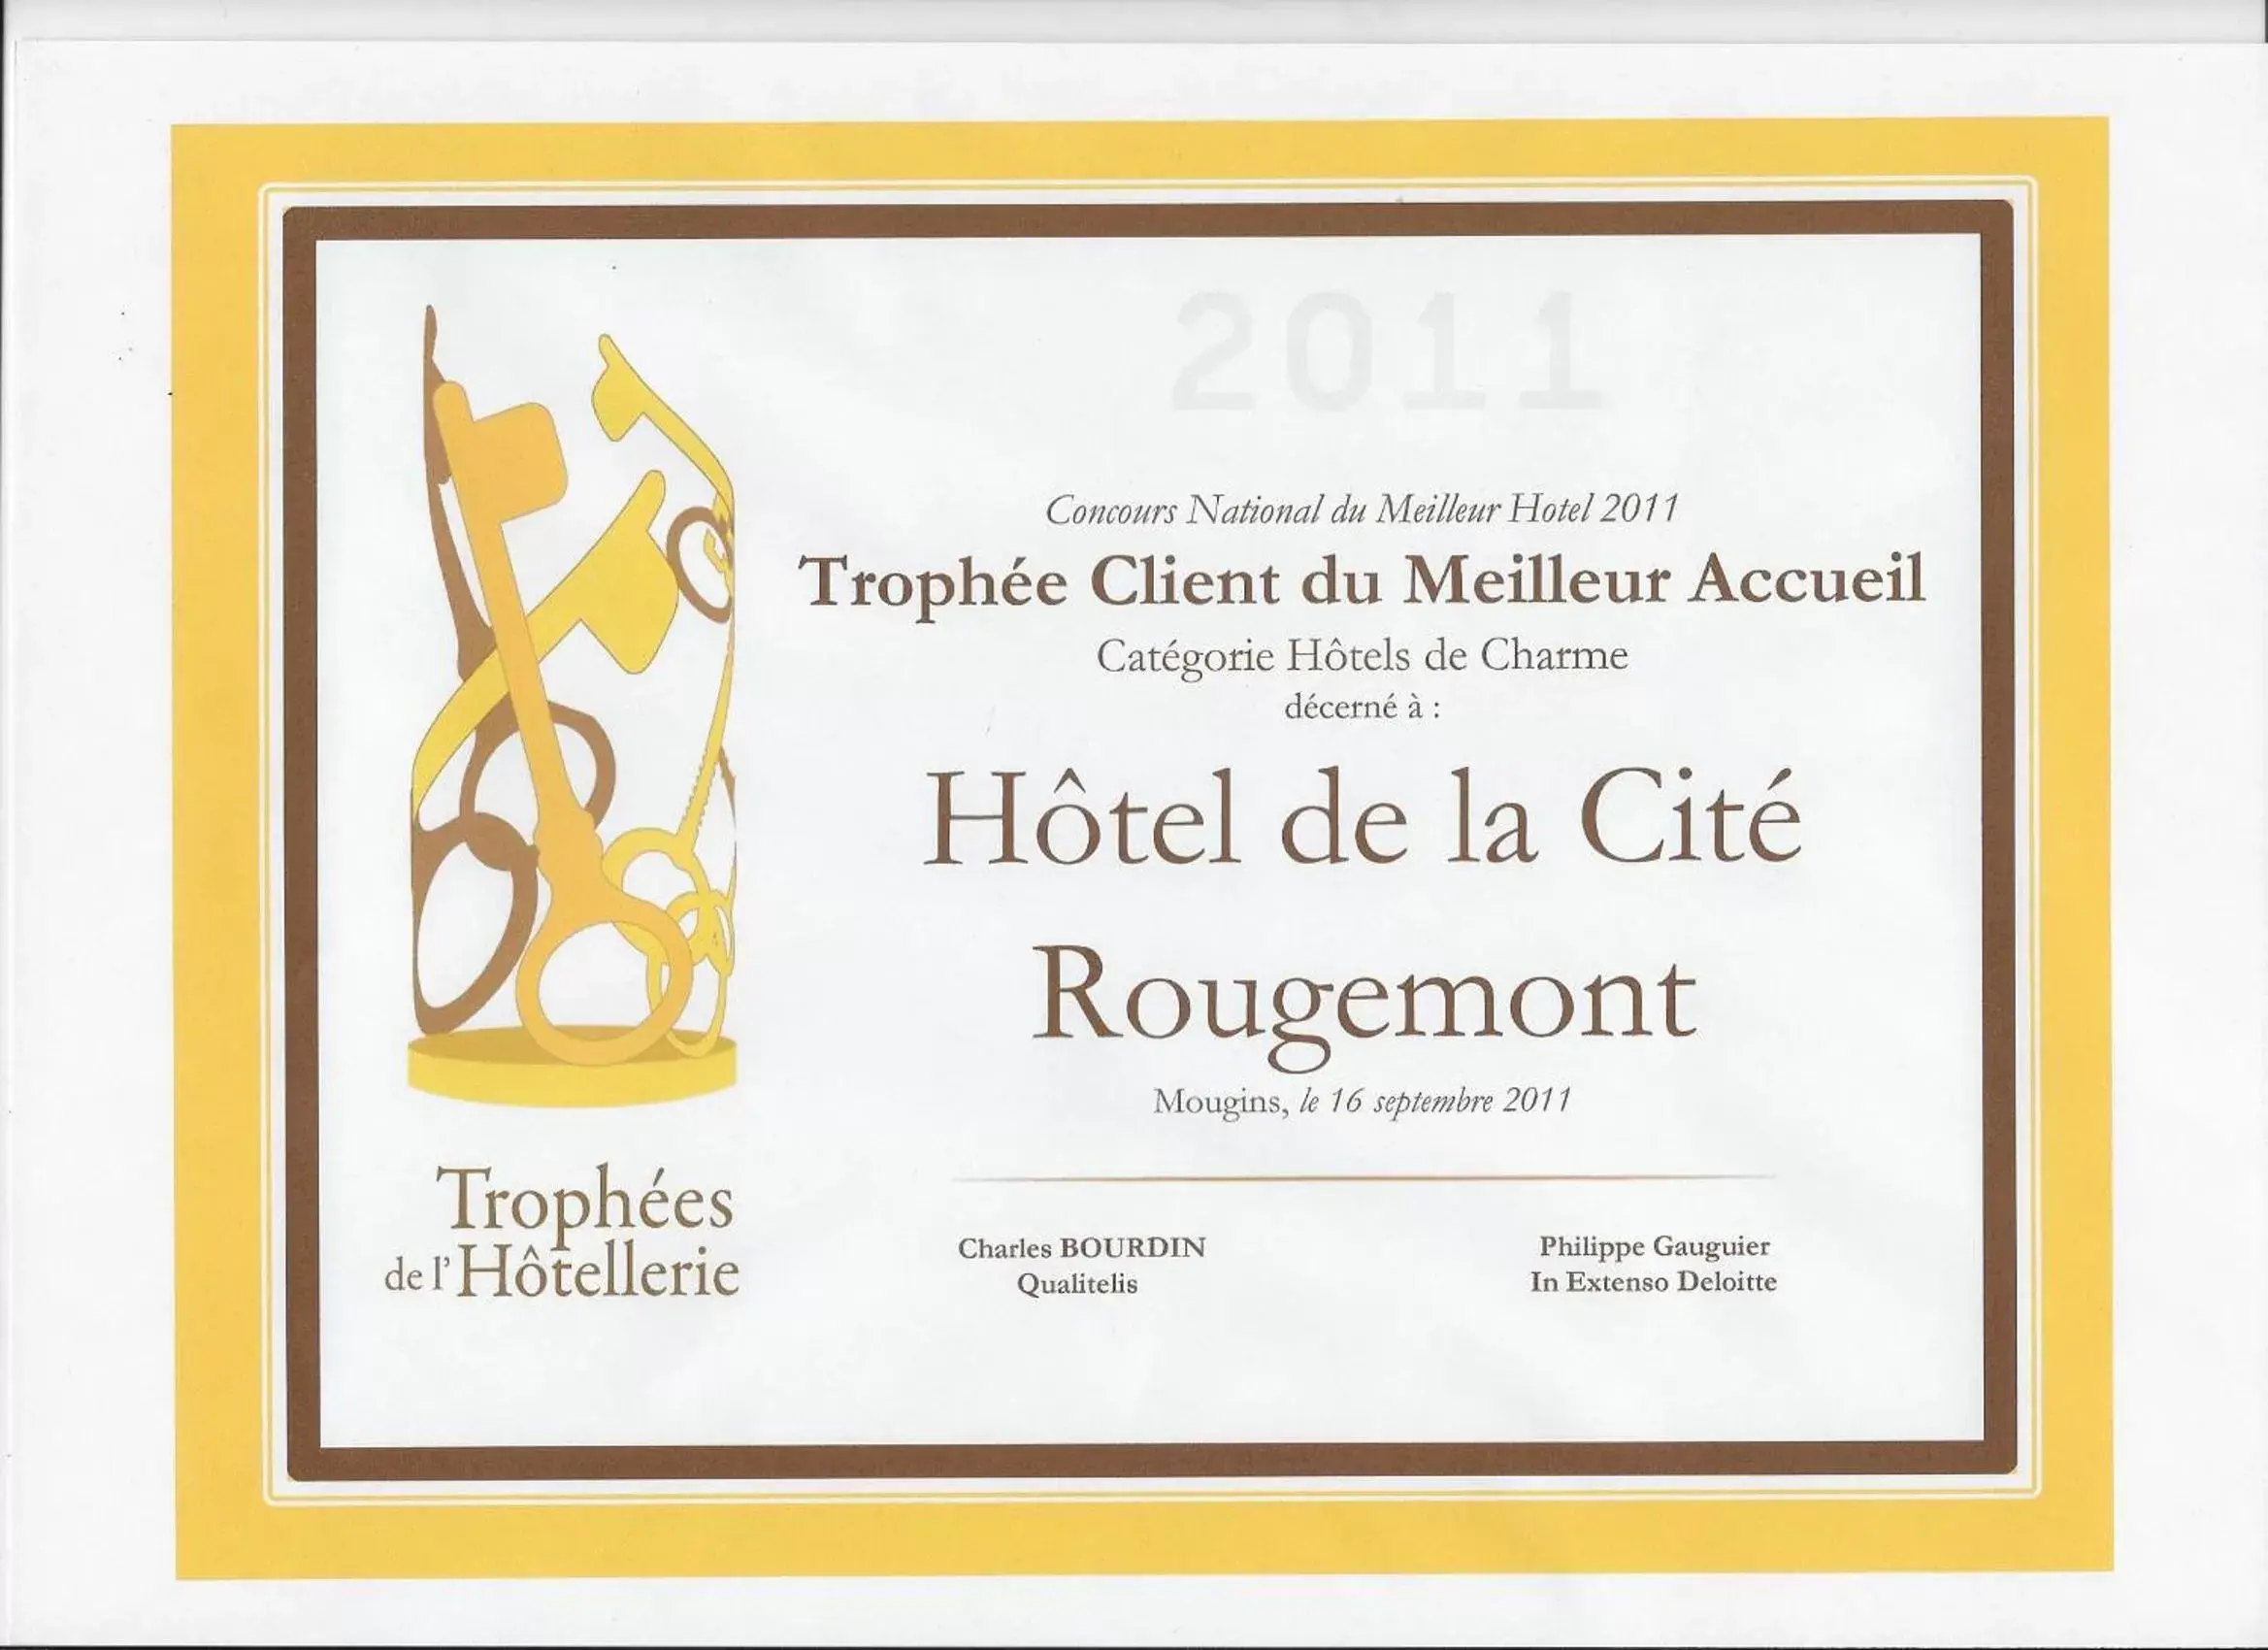 Certificate/Award in Hotel De La Cite Rougemont